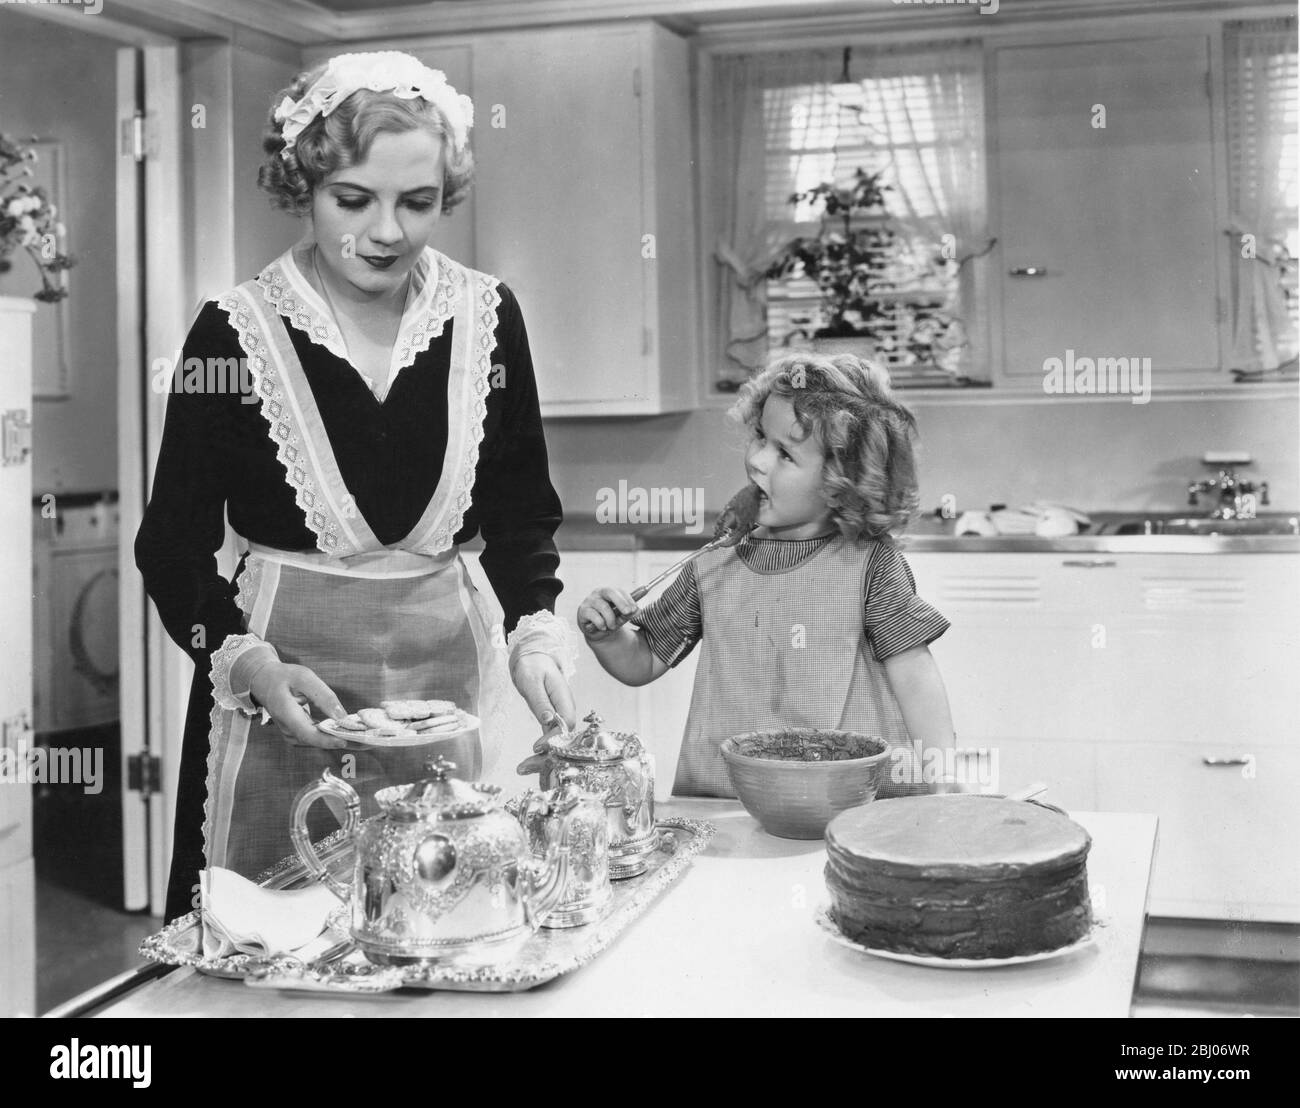 Shirley Jane Temple (23 aprile 1928) è un'attrice vincitrice dell'Academy Award, famosa per essere un'iconica attore statunitense degli anni trenta, anche se è anche notevole per la sua carriera diplomatica come adulto. Dopo essere salita alla fama all'età di sei anni con la sua performance rivoluzionaria in occhi luminosi nel 1934, Ha recitato in una serie di film di grande successo che ha vinto la sua diffusa adulazione pubblica e la ha vista diventare la stella top grossing presso il box-Office americano durante l'altezza della depressione. Negli anni '40 andò a star nei film come giovane adulto. In vita successiva, divenne un'unità Foto Stock